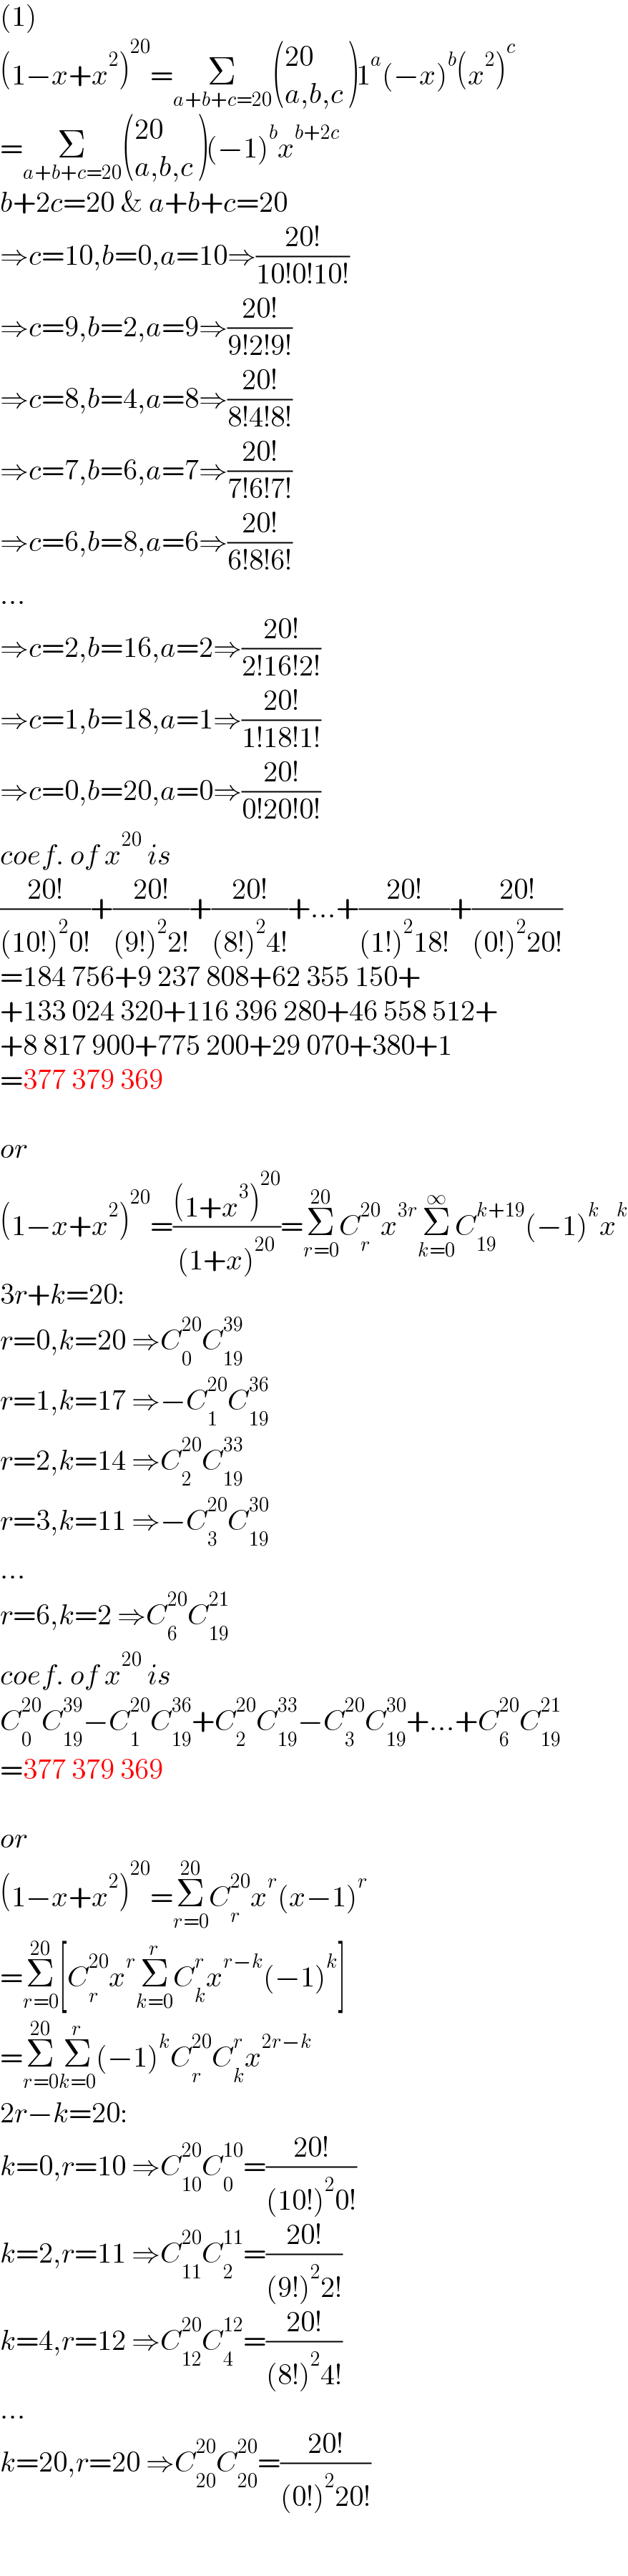 (1)  (1−x+x^2 )^(20) =Σ_(a+b+c=20)  (((20)),((a,b,c)) )1^a (−x)^b (x^2 )^c   =Σ_(a+b+c=20)  (((20)),((a,b,c)) )(−1)^b x^(b+2c)   b+2c=20 & a+b+c=20  ⇒c=10,b=0,a=10⇒((20!)/(10!0!10!))  ⇒c=9,b=2,a=9⇒((20!)/(9!2!9!))  ⇒c=8,b=4,a=8⇒((20!)/(8!4!8!))  ⇒c=7,b=6,a=7⇒((20!)/(7!6!7!))  ⇒c=6,b=8,a=6⇒((20!)/(6!8!6!))  ...  ⇒c=2,b=16,a=2⇒((20!)/(2!16!2!))  ⇒c=1,b=18,a=1⇒((20!)/(1!18!1!))  ⇒c=0,b=20,a=0⇒((20!)/(0!20!0!))  coef. of x^(20)  is  ((20!)/((10!)^2 0!))+((20!)/((9!)^2 2!))+((20!)/((8!)^2 4!))+...+((20!)/((1!)^2 18!))+((20!)/((0!)^2 20!))  =184 756+9 237 808+62 355 150+  +133 024 320+116 396 280+46 558 512+  +8 817 900+775 200+29 070+380+1  =377 379 369    or  (1−x+x^2 )^(20) =(((1+x^3 )^(20) )/((1+x)^(20) ))=Σ_(r=0) ^(20) C_r ^(20) x^(3r) Σ_(k=0) ^∞ C_(19) ^(k+19) (−1)^k x^k   3r+k=20:  r=0,k=20 ⇒C_0 ^(20) C_(19) ^(39)   r=1,k=17 ⇒−C_1 ^(20) C_(19) ^(36)   r=2,k=14 ⇒C_2 ^(20) C_(19) ^(33)   r=3,k=11 ⇒−C_3 ^(20) C_(19) ^(30)   ...  r=6,k=2 ⇒C_6 ^(20) C_(19) ^(21)   coef. of x^(20)  is  C_0 ^(20) C_(19) ^(39) −C_1 ^(20) C_(19) ^(36) +C_2 ^(20) C_(19) ^(33) −C_3 ^(20) C_(19) ^(30) +...+C_6 ^(20) C_(19) ^(21)   =377 379 369    or  (1−x+x^2 )^(20) =Σ_(r=0) ^(20) C_r ^(20) x^r (x−1)^r   =Σ_(r=0) ^(20) [C_r ^(20) x^r Σ_(k=0) ^r C_k ^r x^(r−k) (−1)^k ]  =Σ_(r=0) ^(20) Σ_(k=0) ^r (−1)^k C_r ^(20) C_k ^r x^(2r−k)   2r−k=20:  k=0,r=10 ⇒C_(10) ^(20) C_0 ^(10) =((20!)/((10!)^2 0!))  k=2,r=11 ⇒C_(11) ^(20) C_2 ^(11) =((20!)/((9!)^2 2!))  k=4,r=12 ⇒C_(12) ^(20) C_4 ^(12) =((20!)/((8!)^2 4!))  ...  k=20,r=20 ⇒C_(20) ^(20) C_(20) ^(20) =((20!)/((0!)^2 20!))  